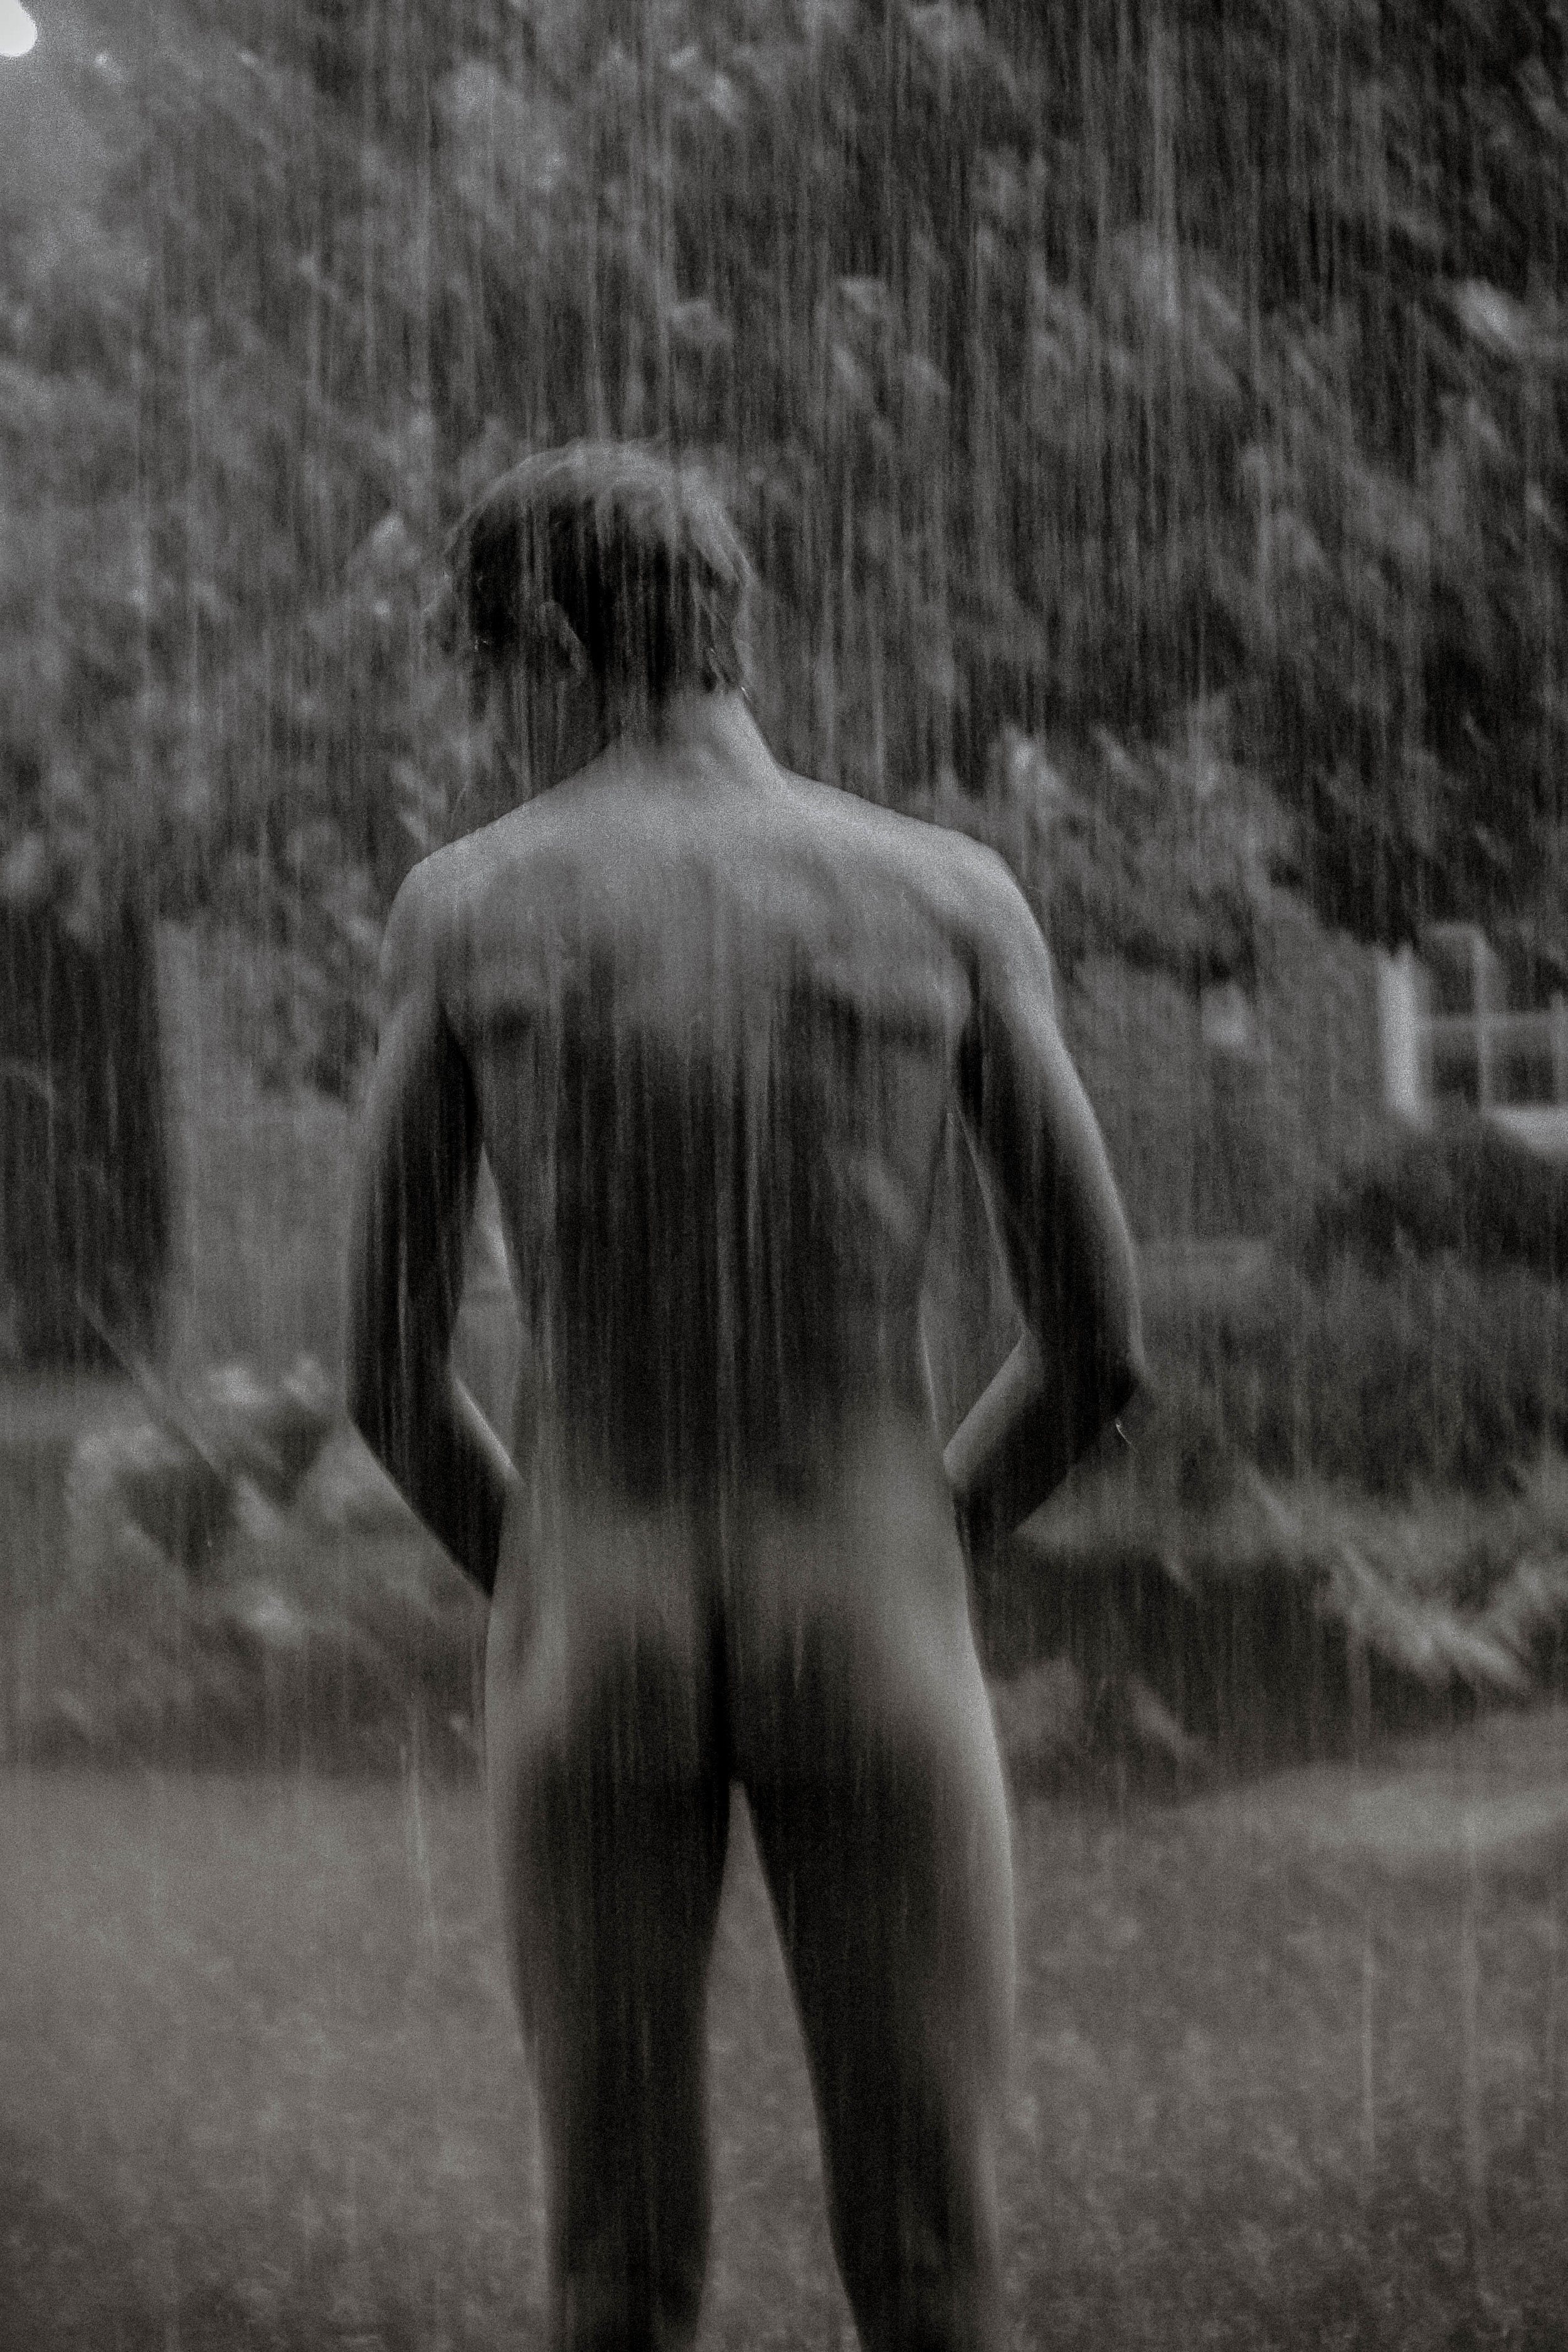 David in Rain, 2014